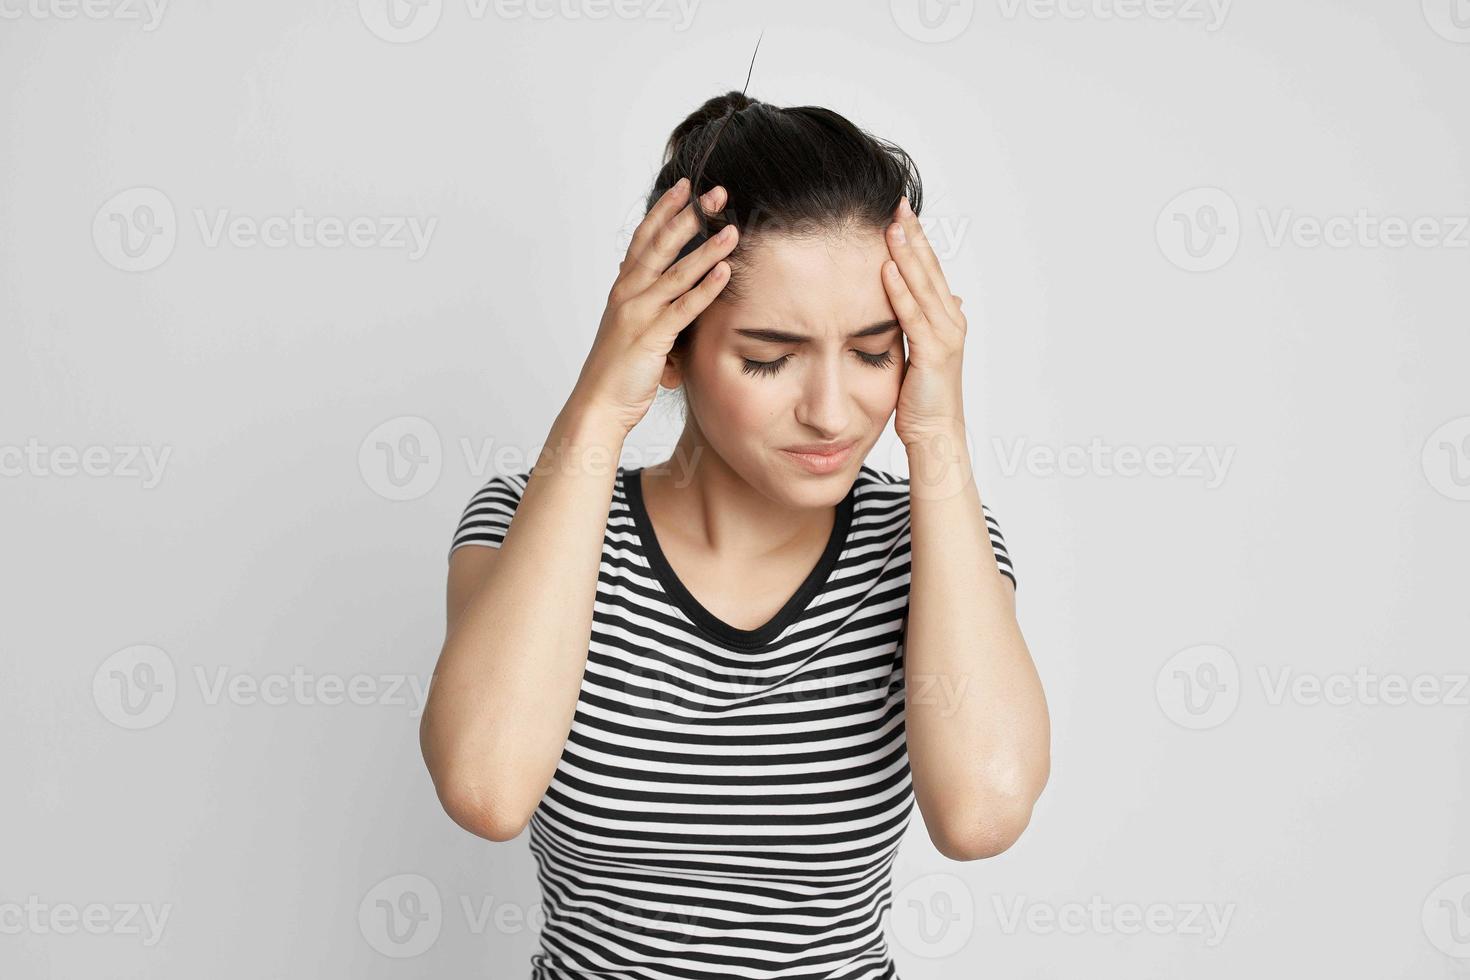 brunett huvudvärk smärtsam syndrom obehag isolerat bakgrund foto